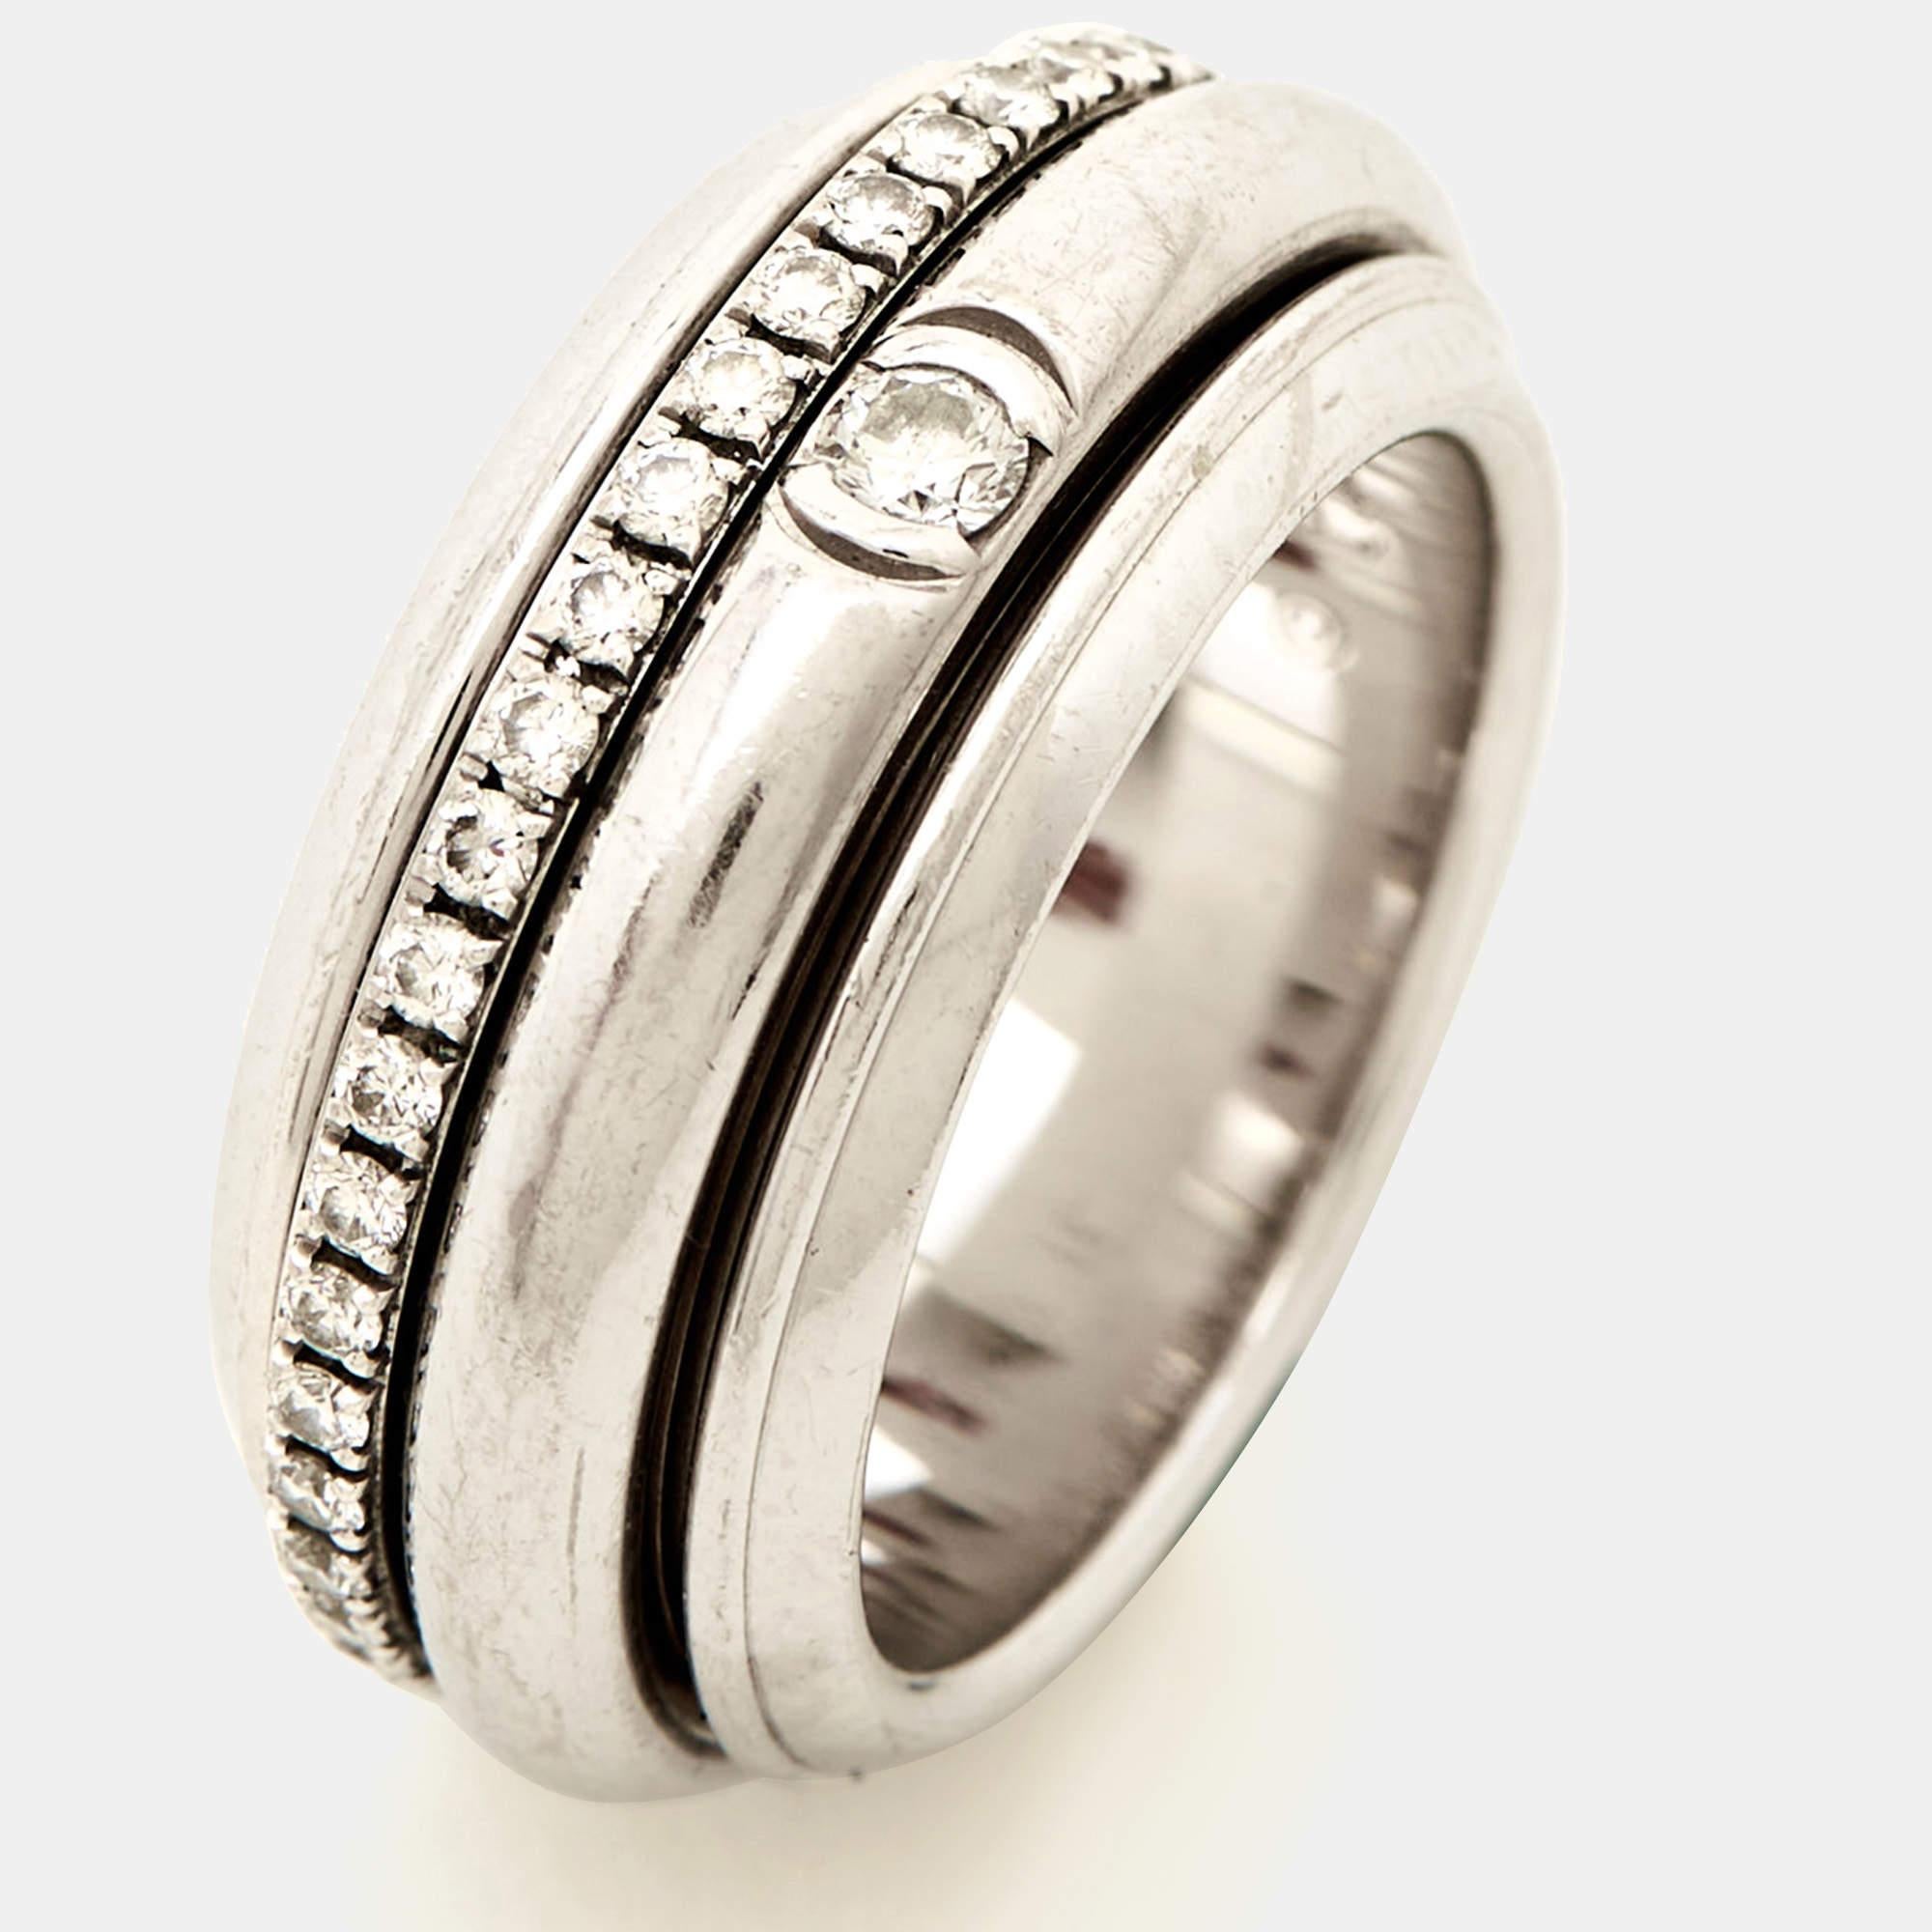 Piaget Possession Diamond 18k White Gold Ring Size 48 In Good Condition For Sale In Dubai, Al Qouz 2